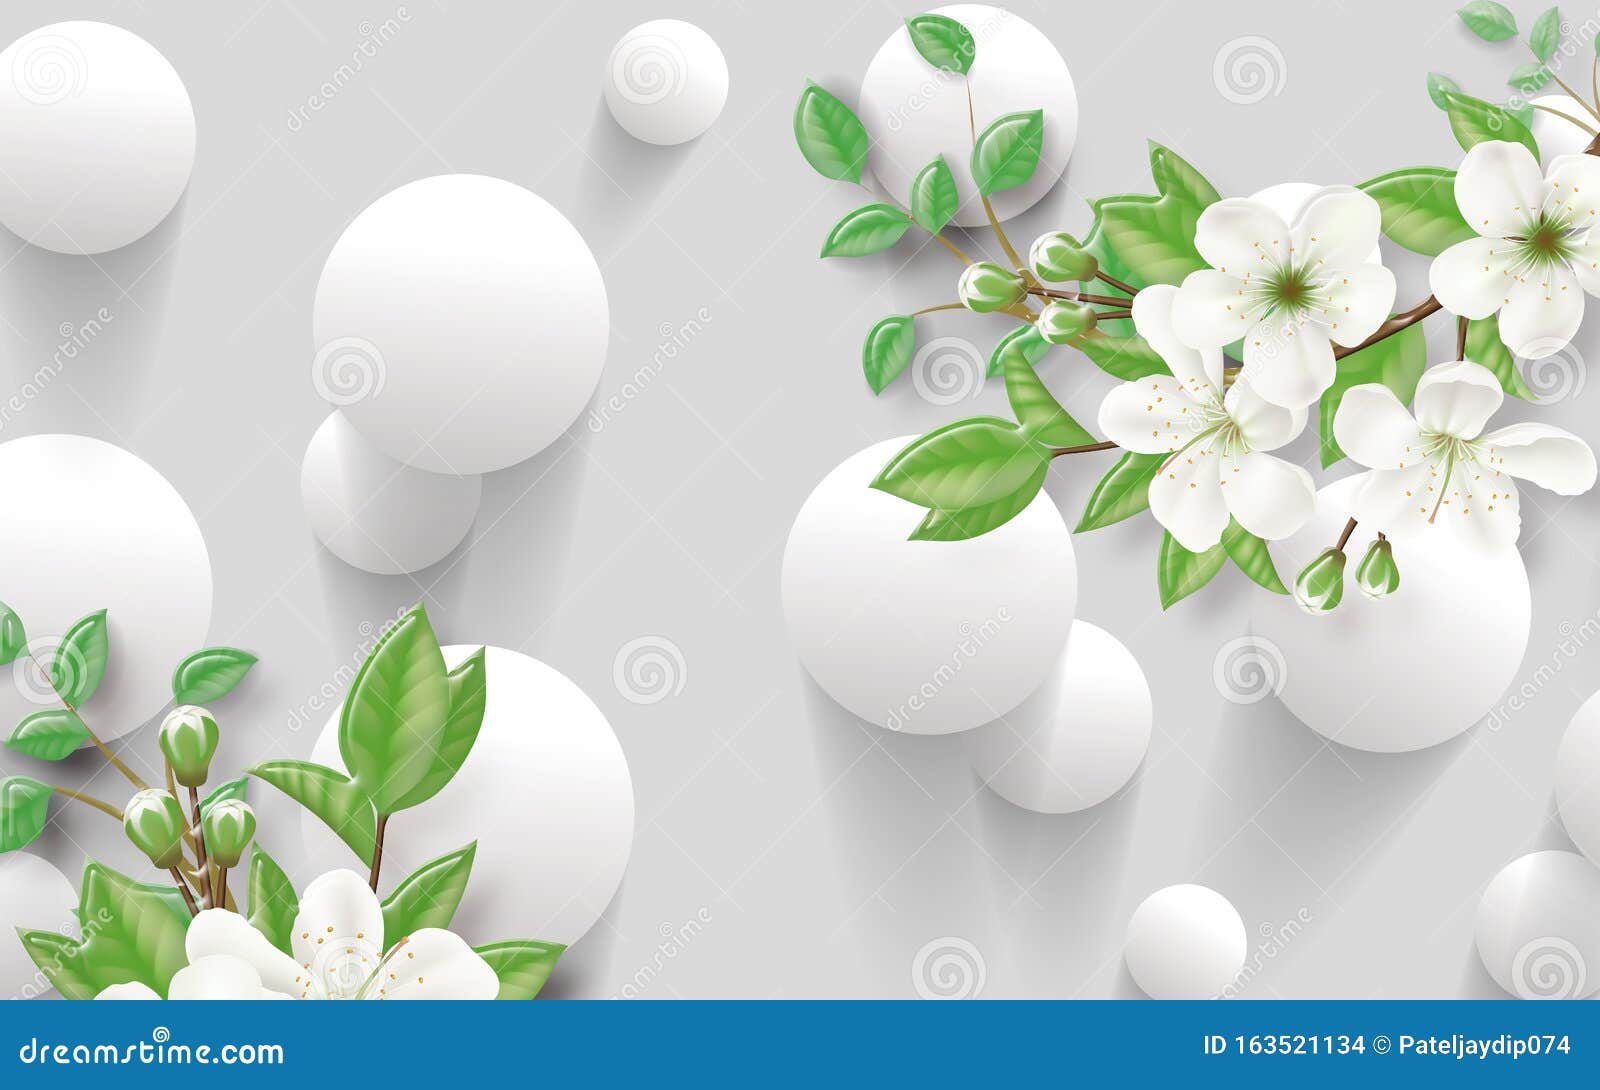 3d Flower Design Wallpaper Background, Stock Illustration